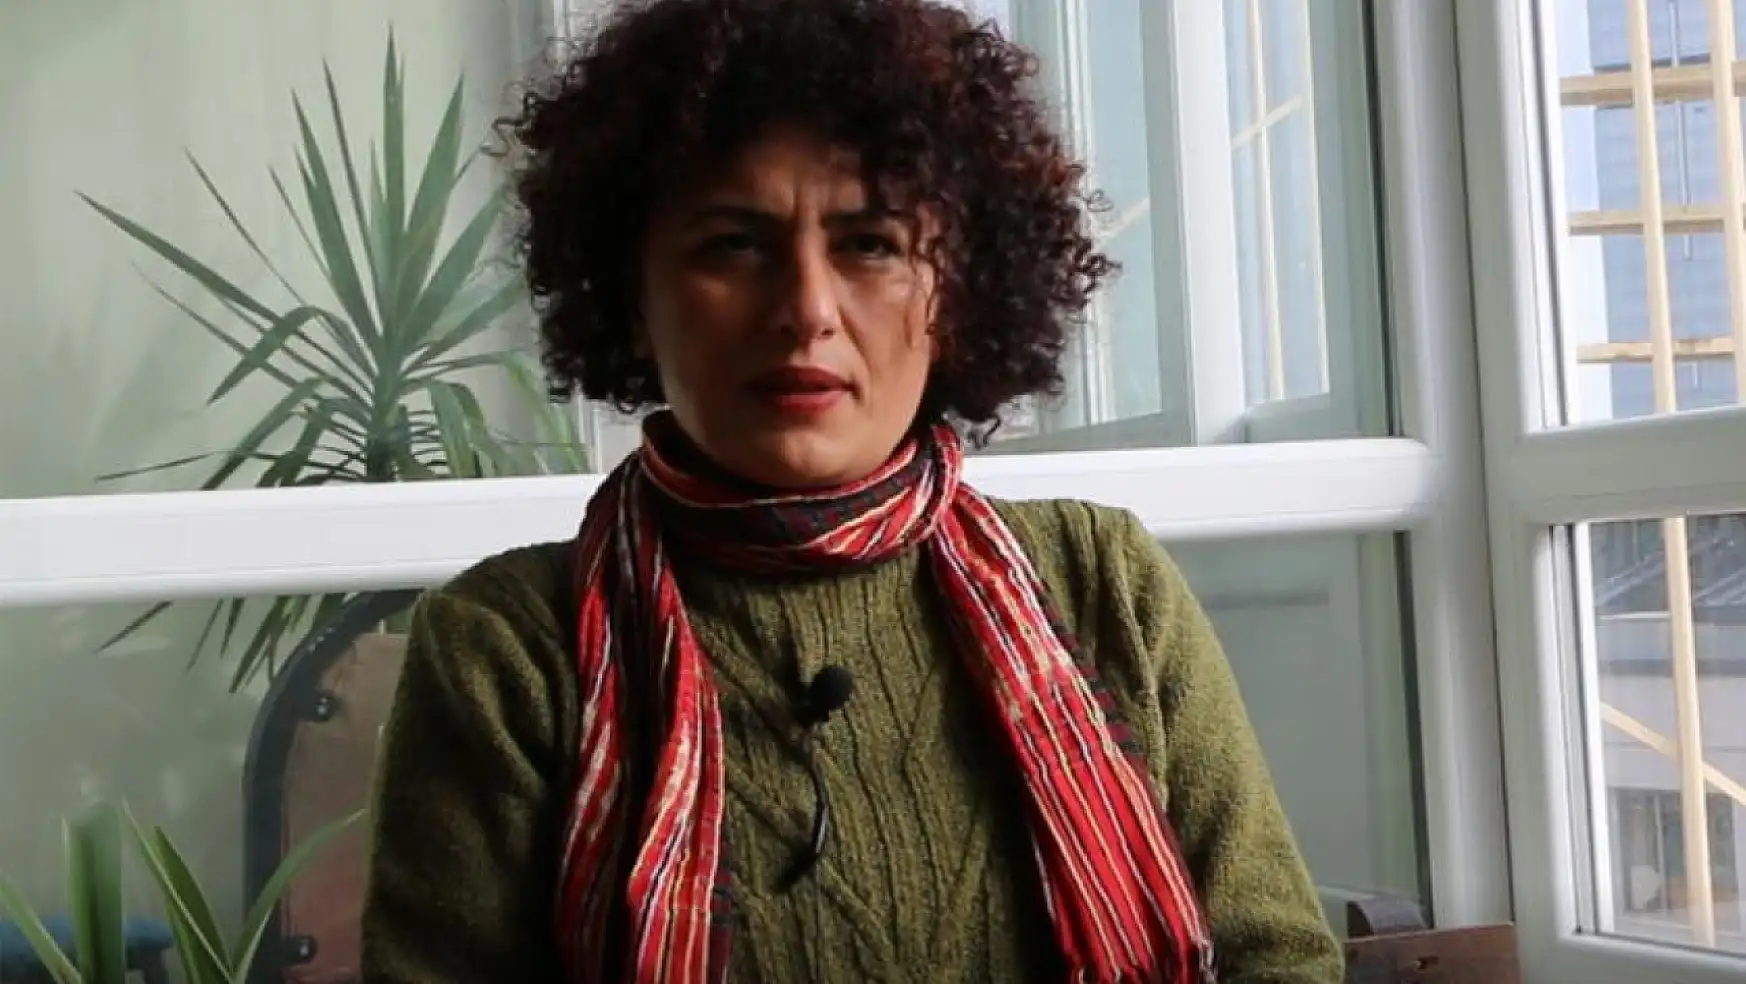 KESK Başkanı: Taksim Bedel Ödenmiş Bir Alandır Taksim Meydanı için Kararlıyız